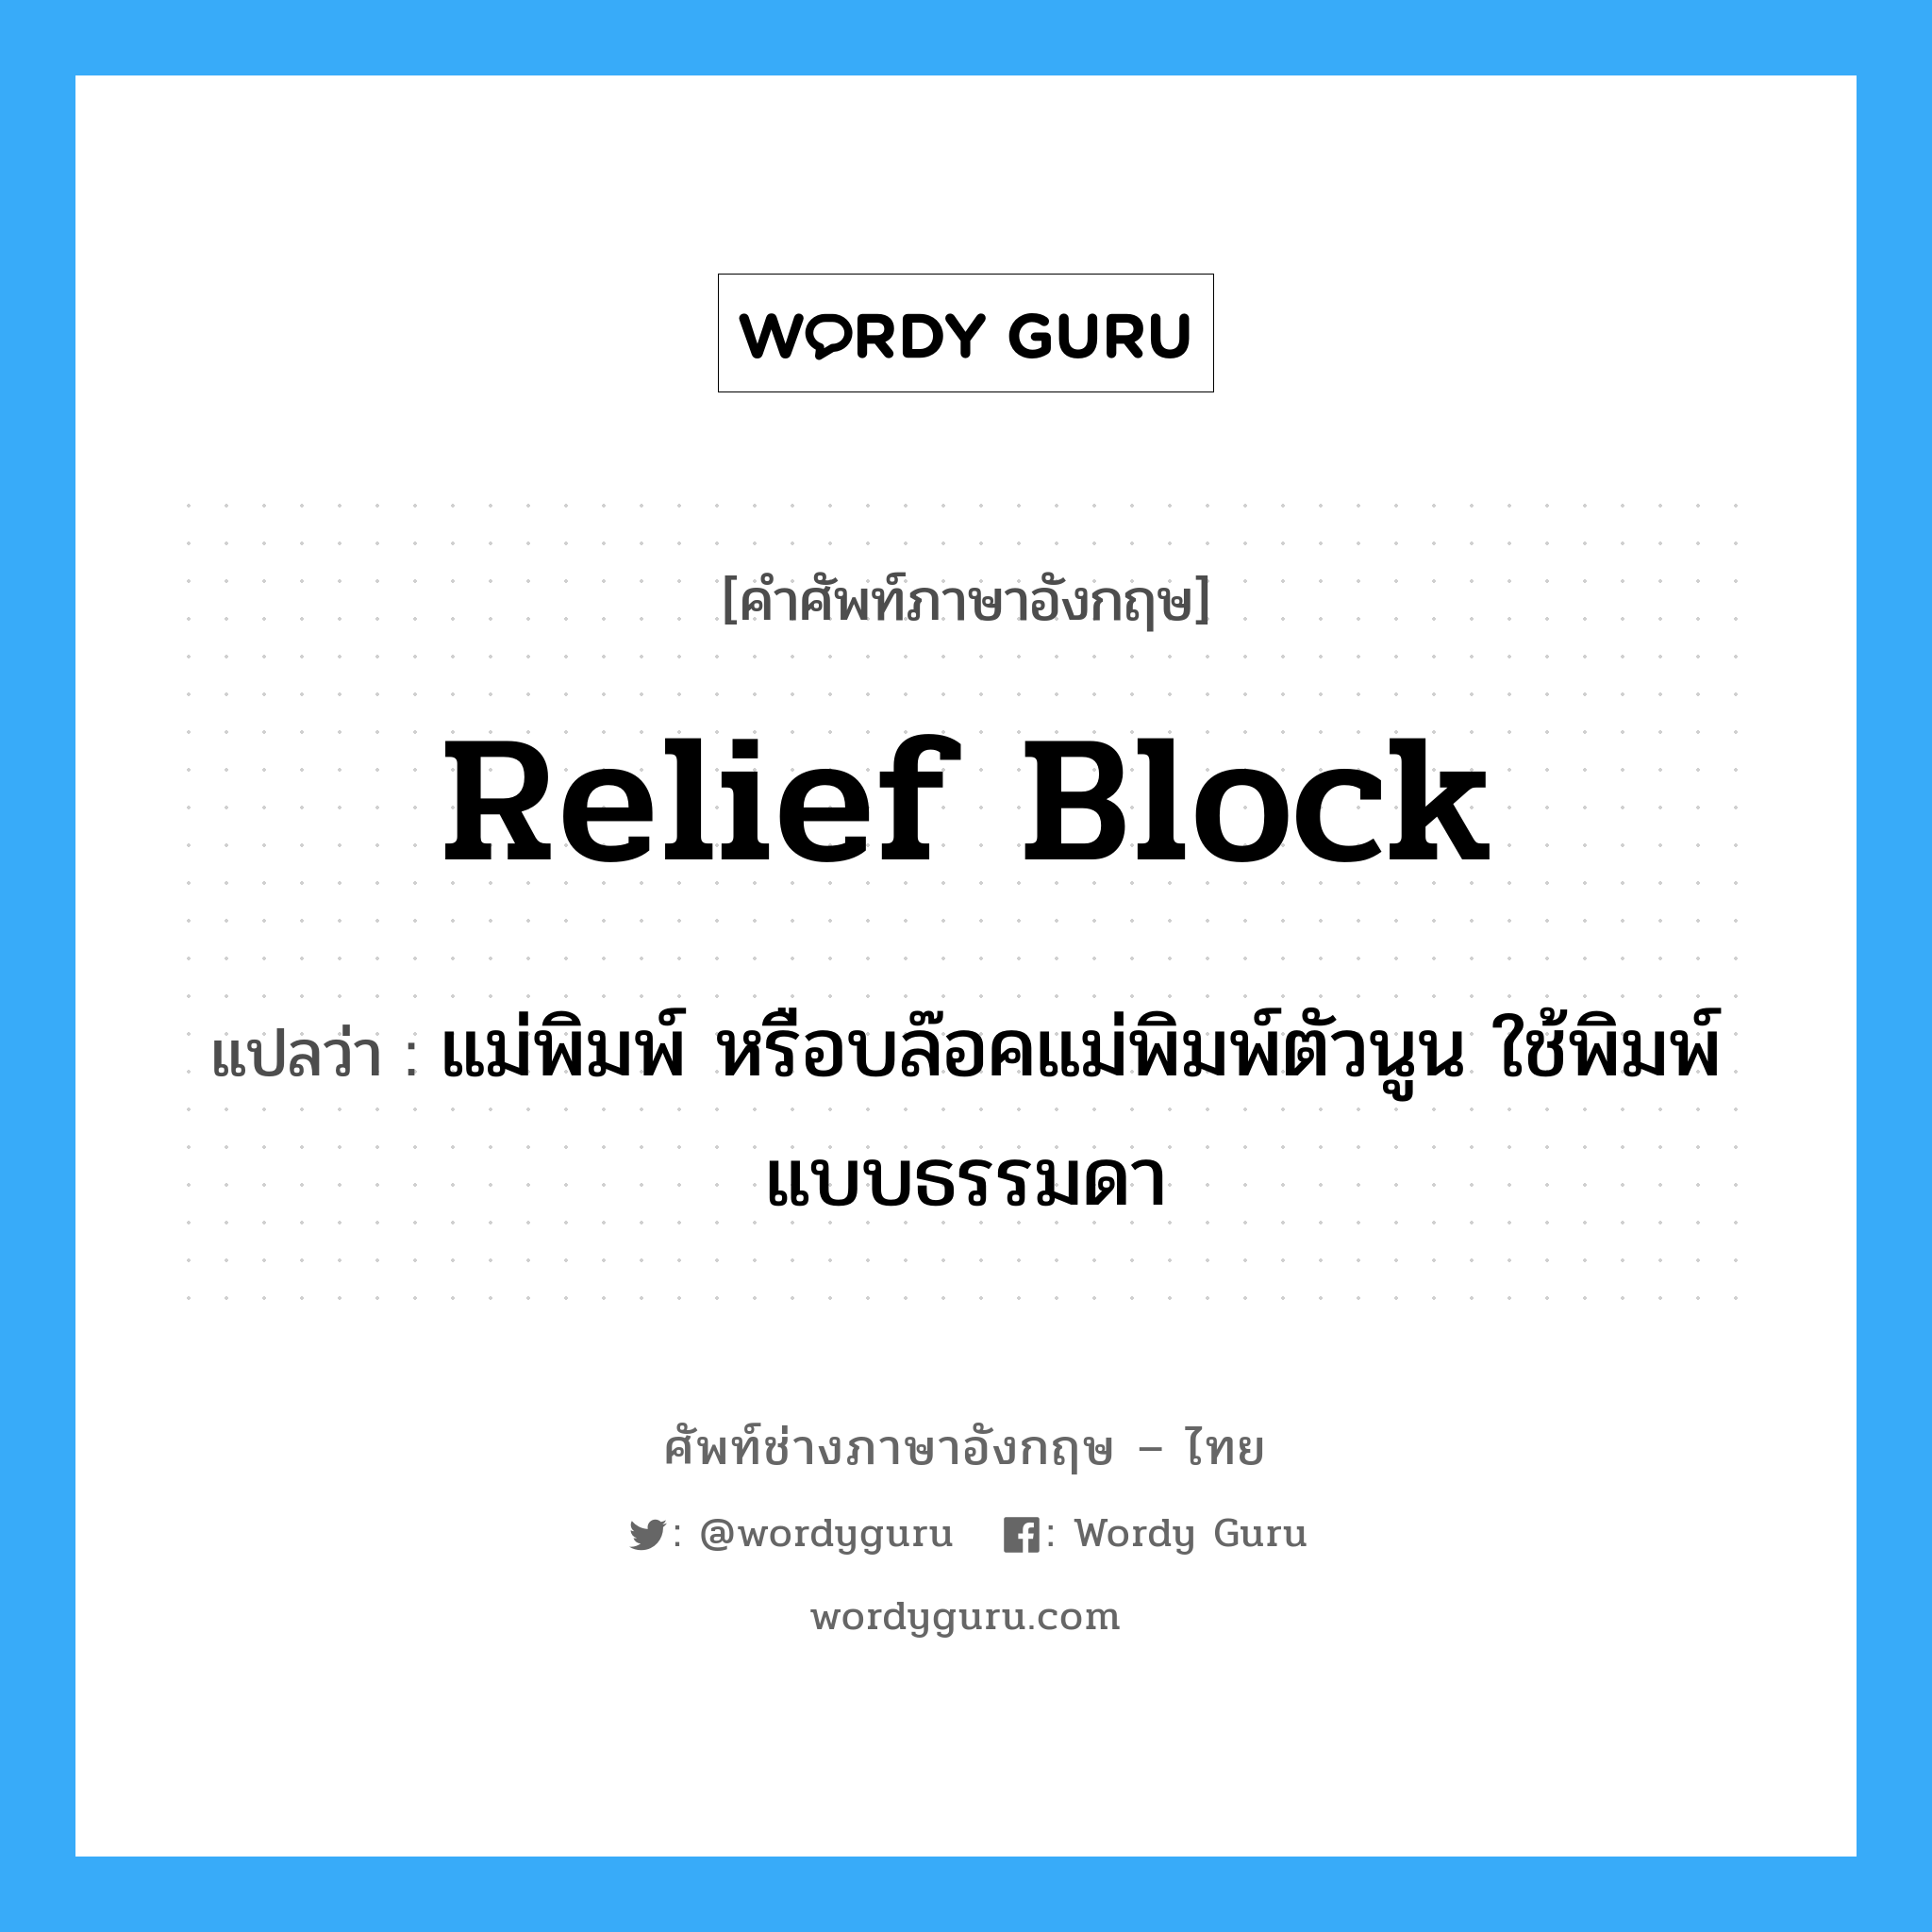 relief block แปลว่า?, คำศัพท์ช่างภาษาอังกฤษ - ไทย relief block คำศัพท์ภาษาอังกฤษ relief block แปลว่า แม่พิมพ์ หรือบล๊อคแม่พิมพ์ตัวนูน ใช้พิมพ์แบบธรรมดา